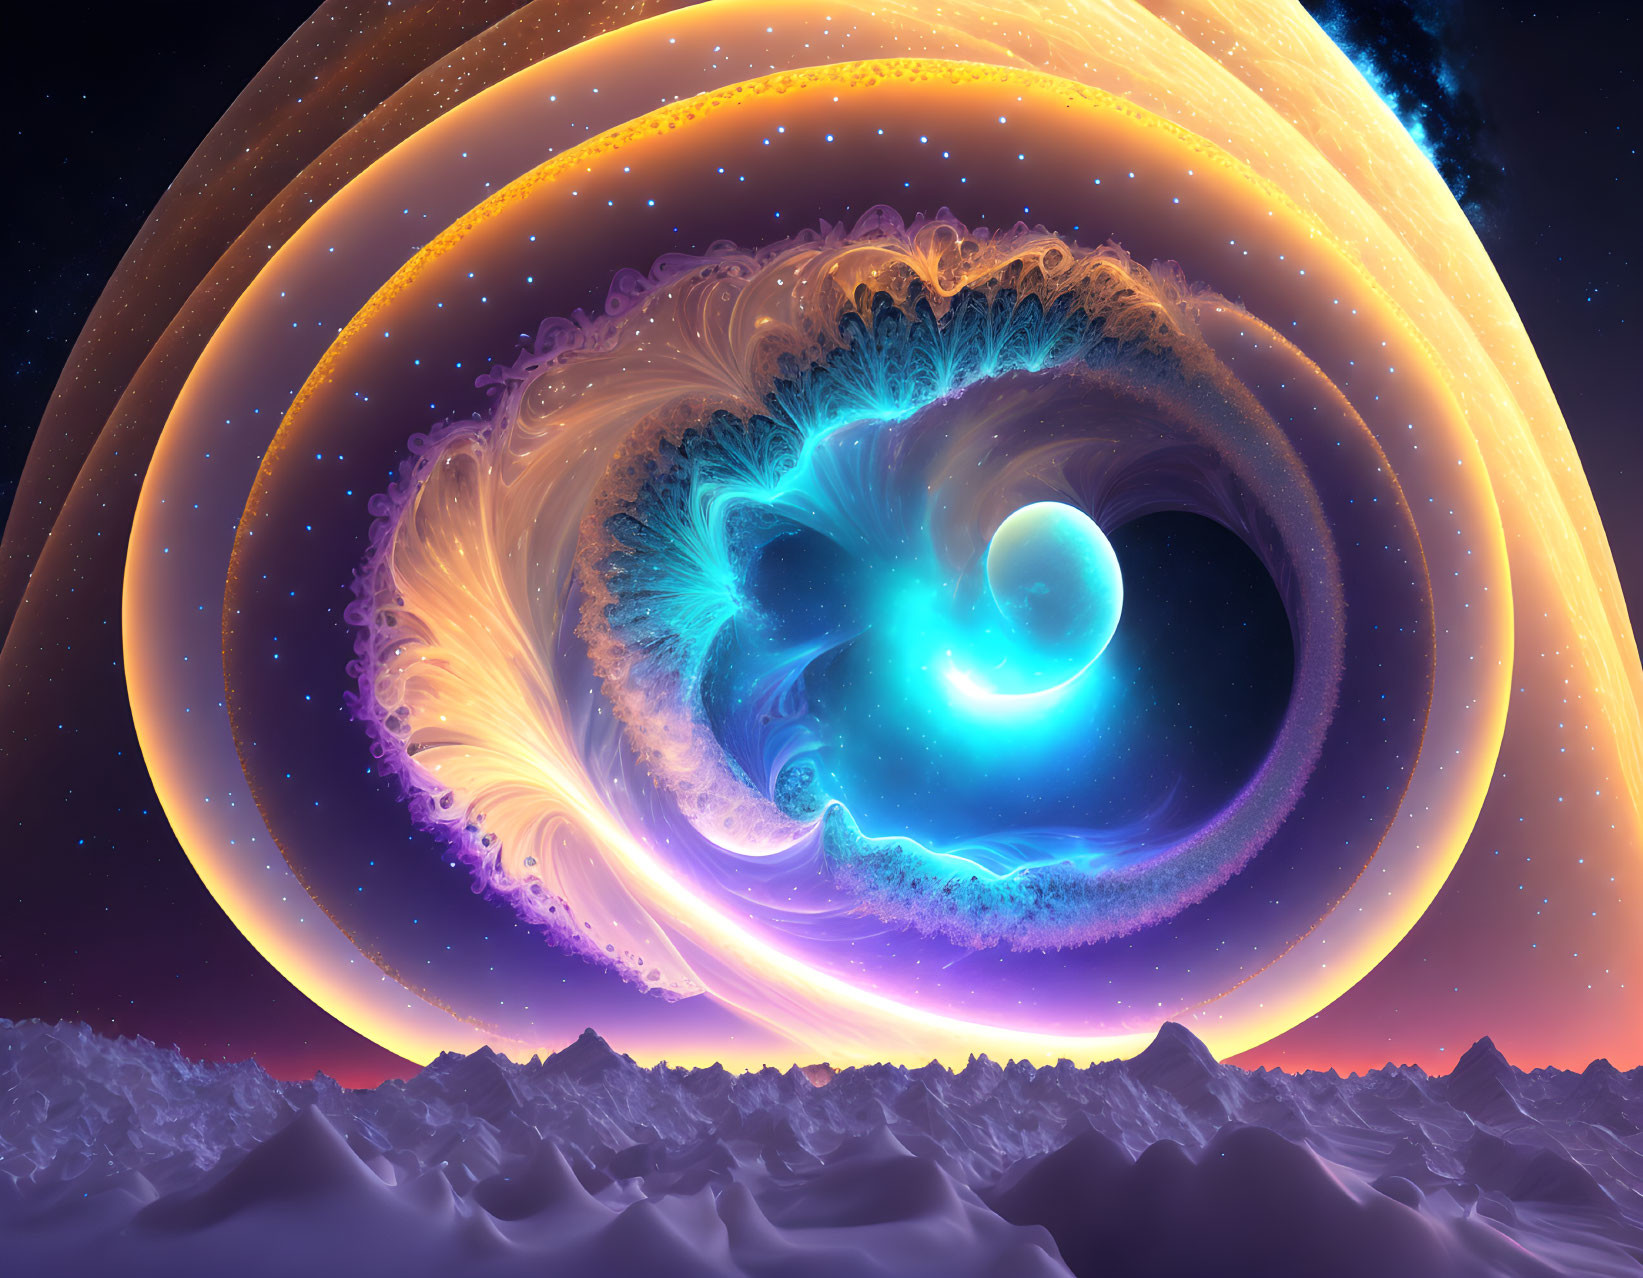 Colorful fractal spiral art over alien landscape with cosmic sky